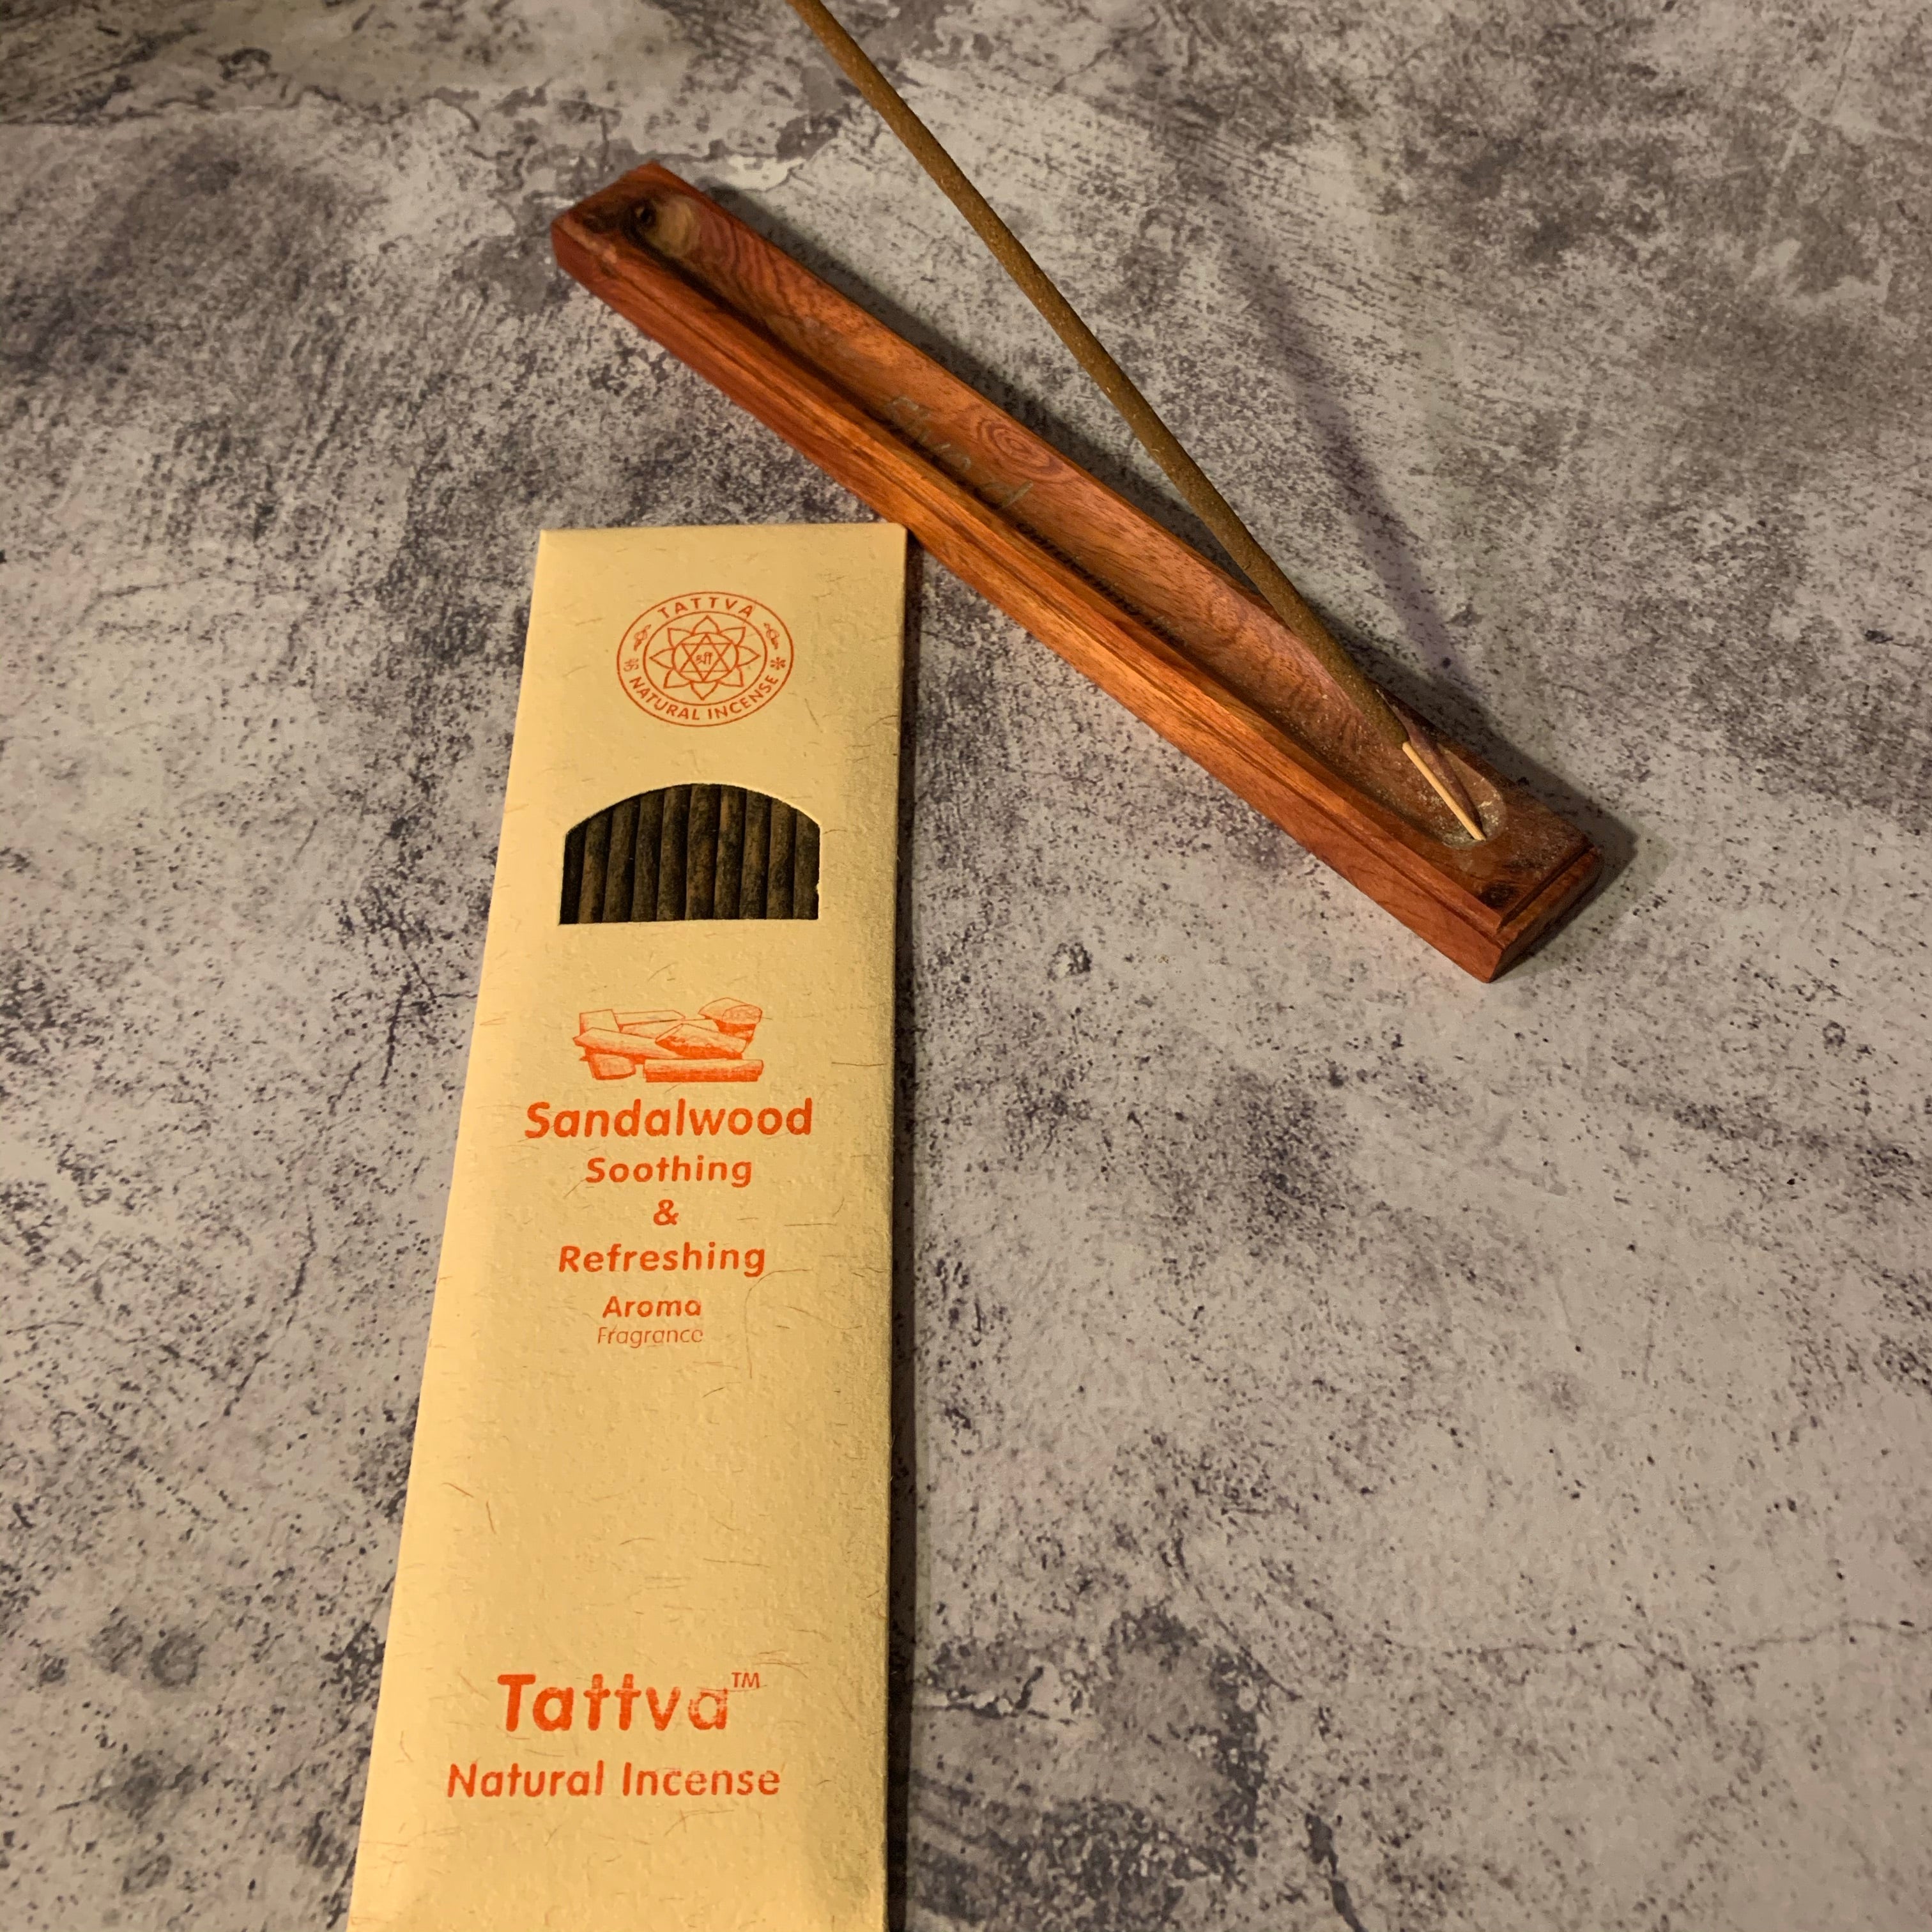 Tattva Natural Incense from Himalayas (India)